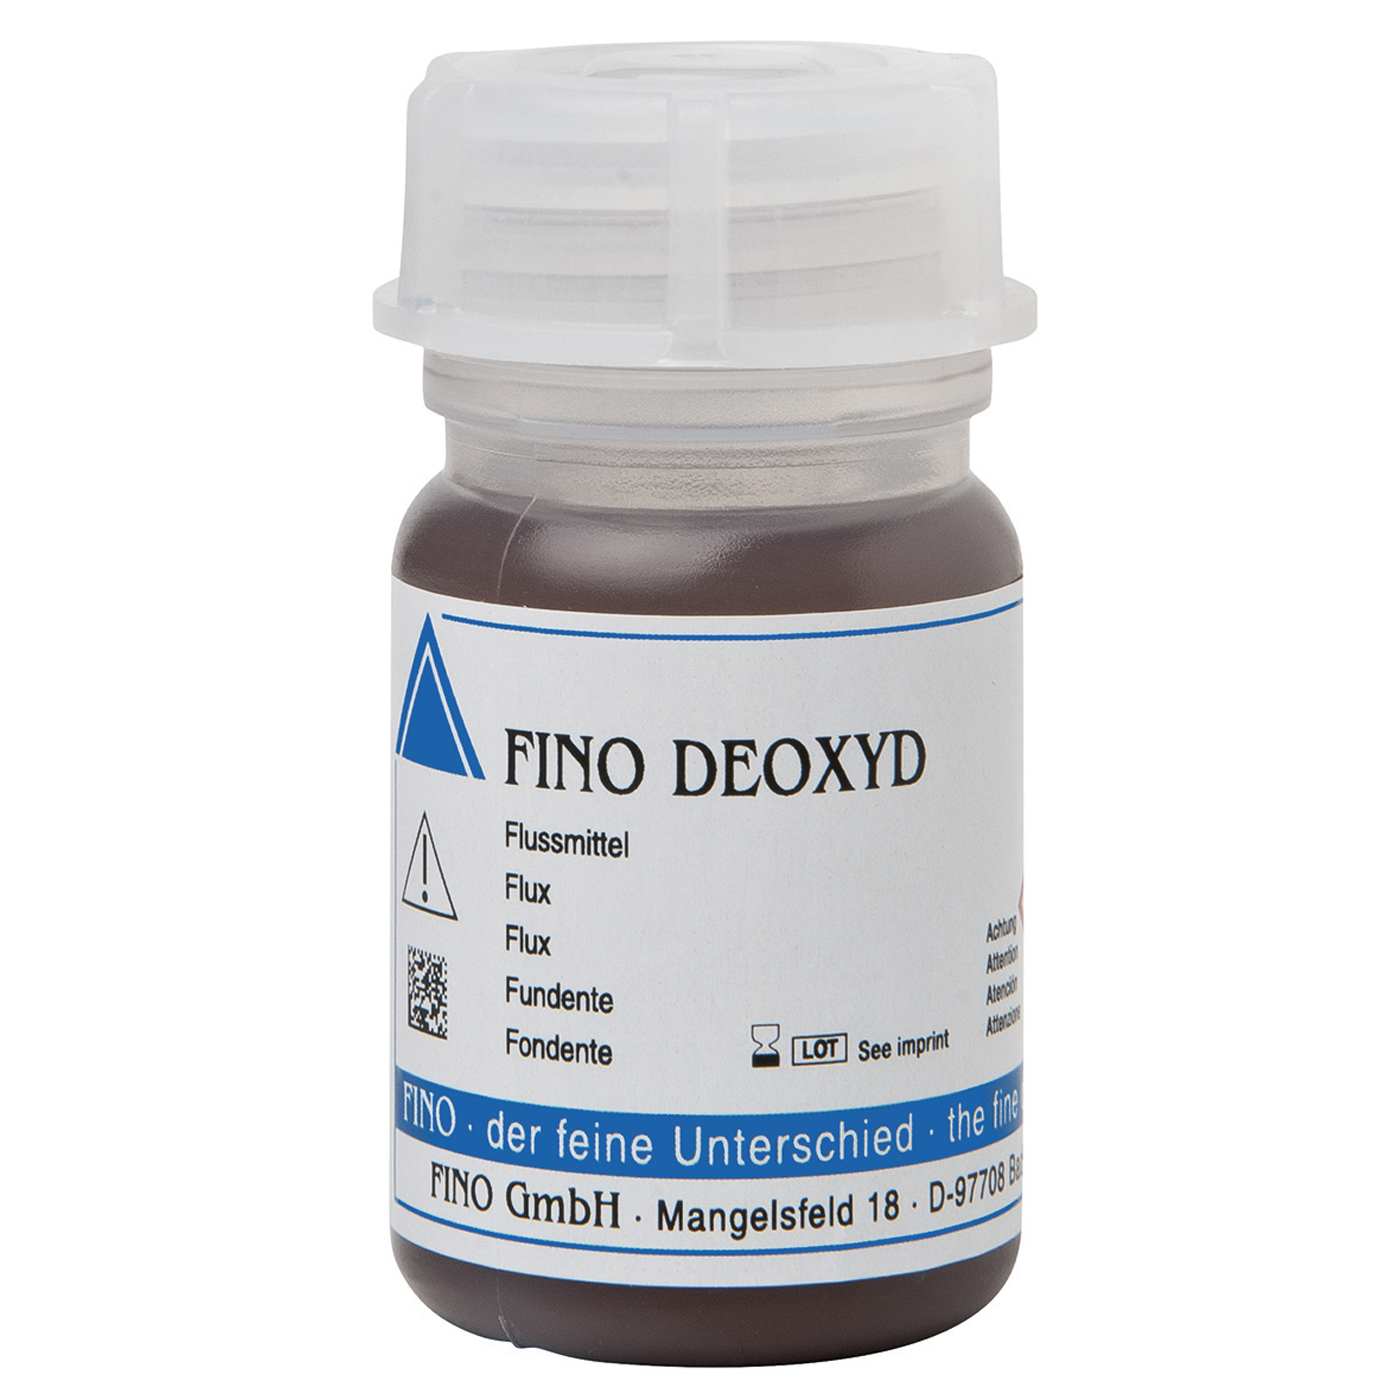 FINO DEOXYD Flux - 80 g